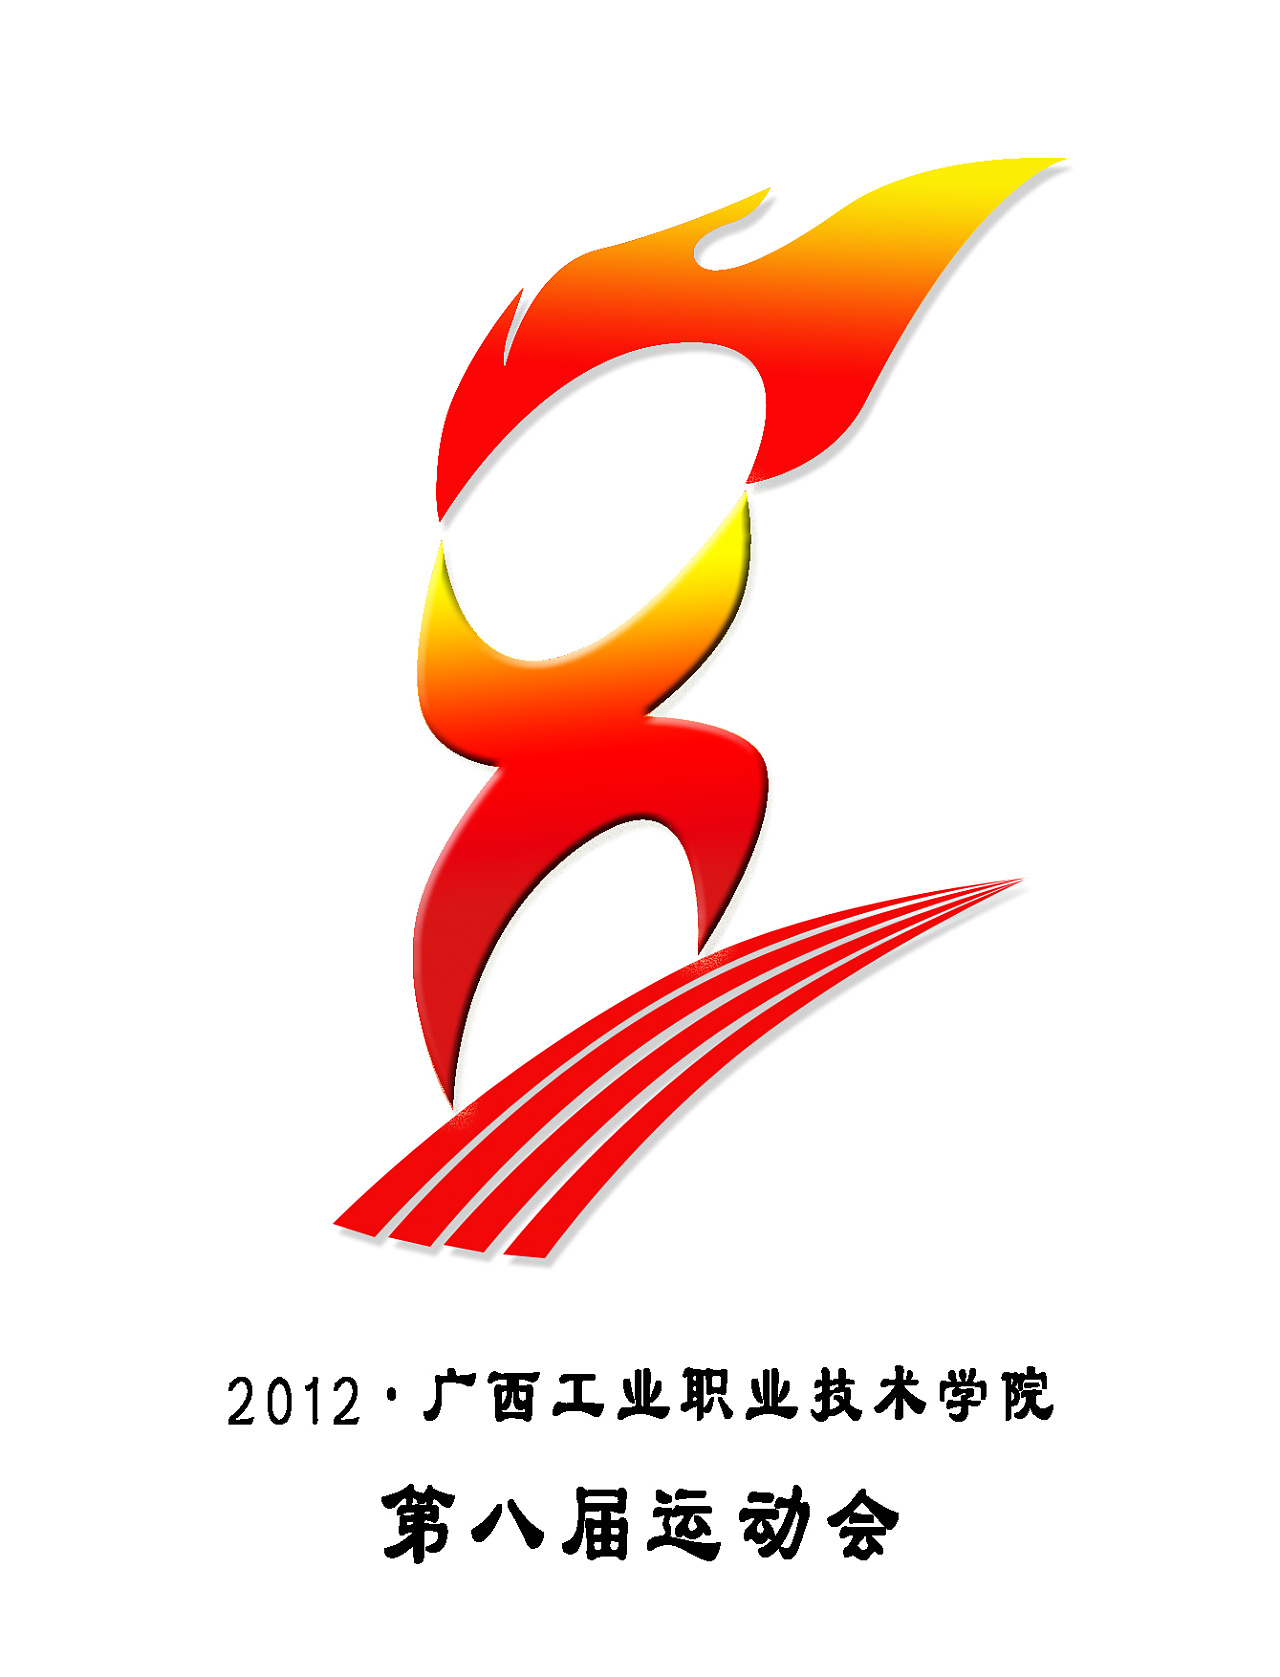 第八届运动会会徽设计比赛作品